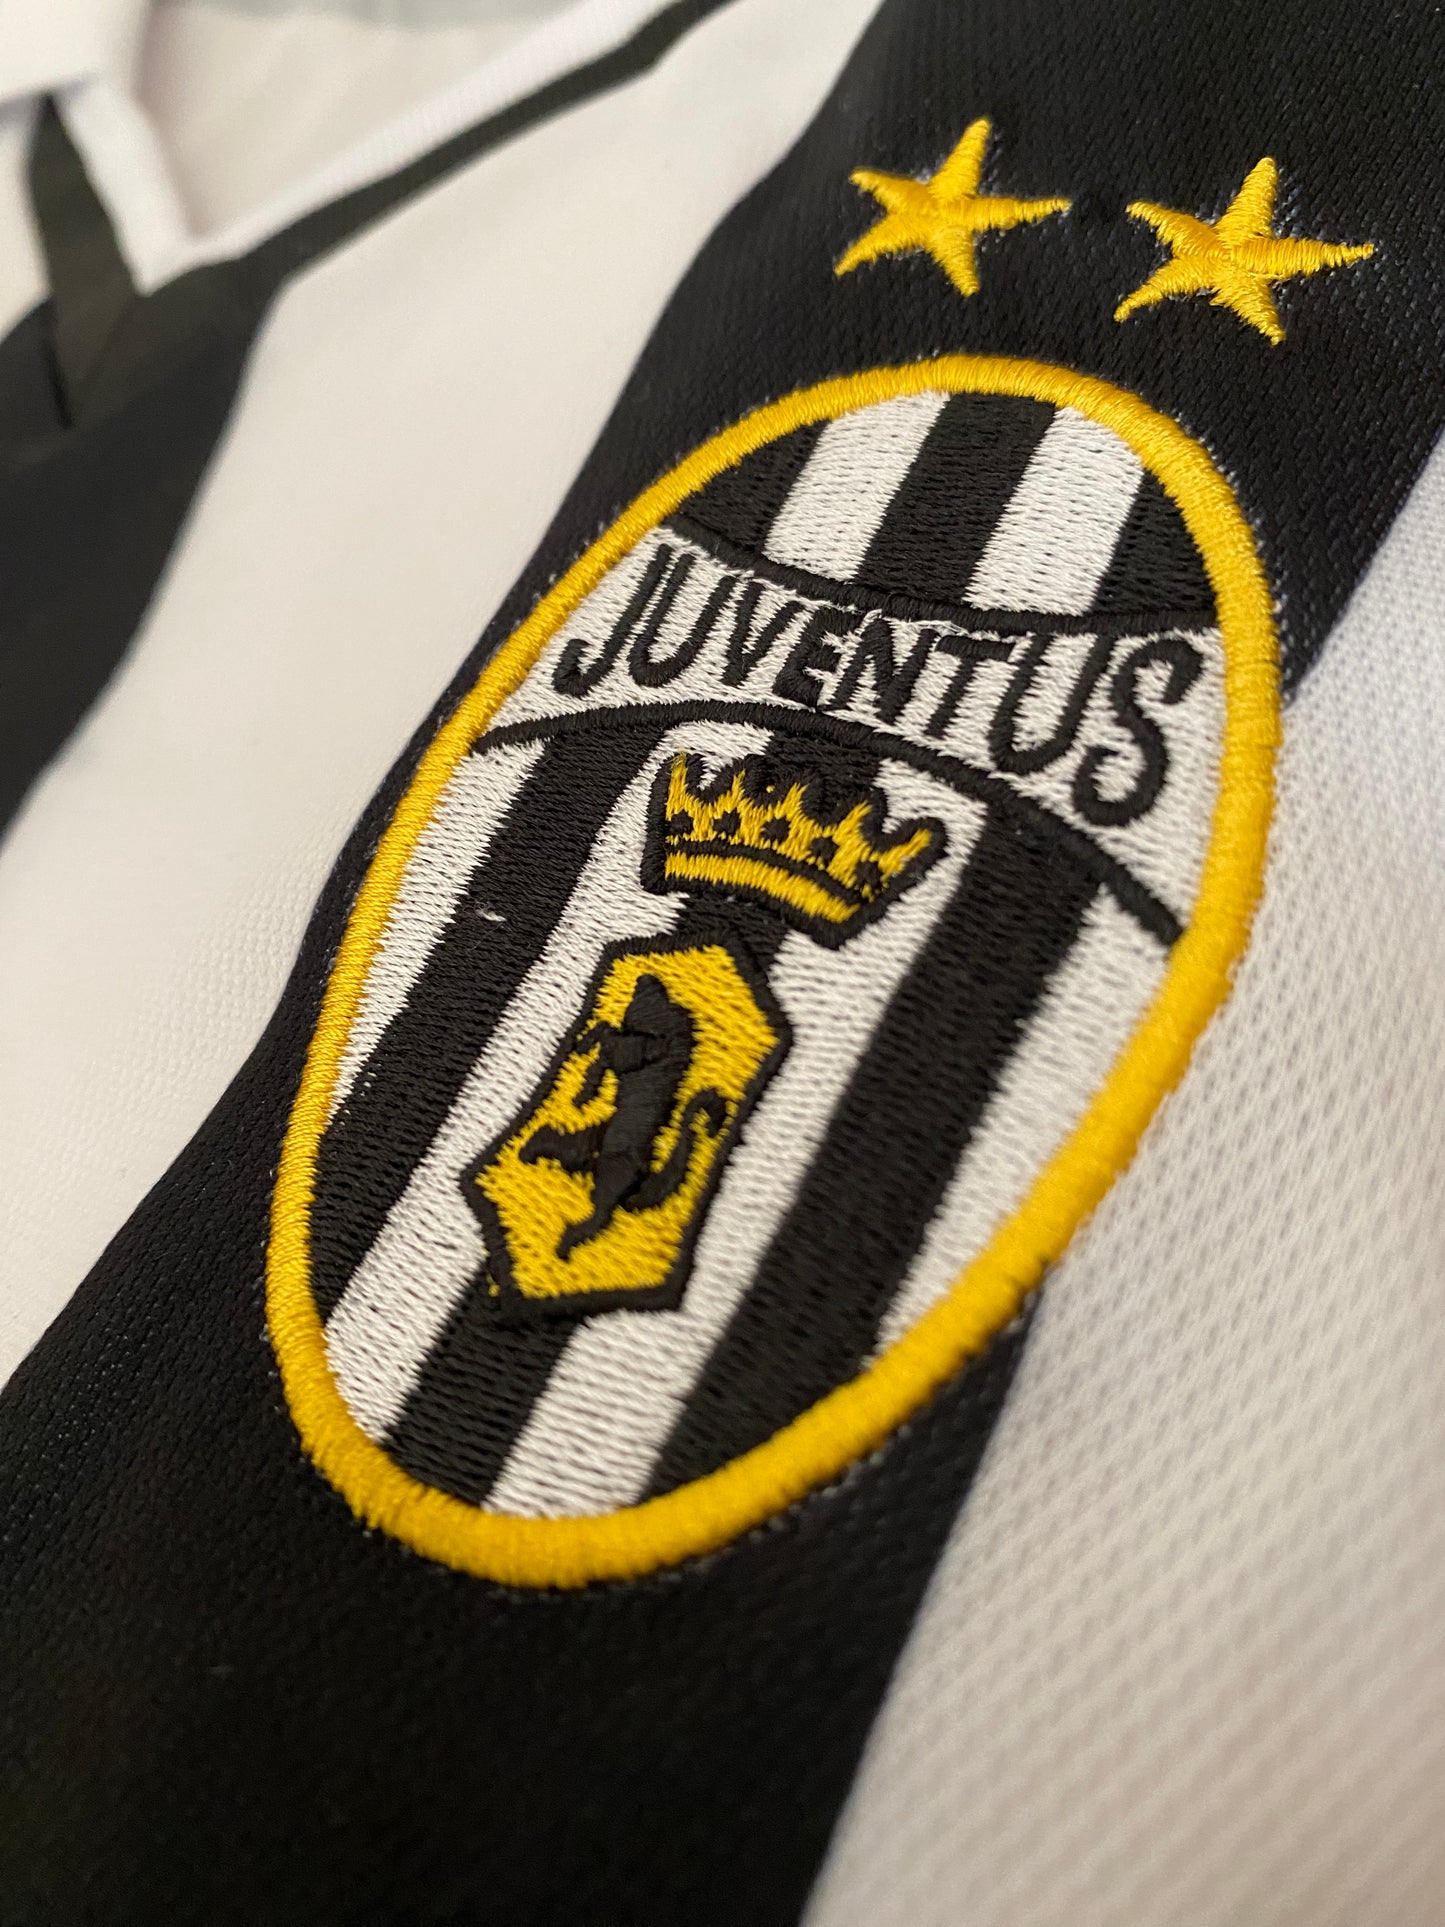 Juventus 2001-2002 Nedved home shirt